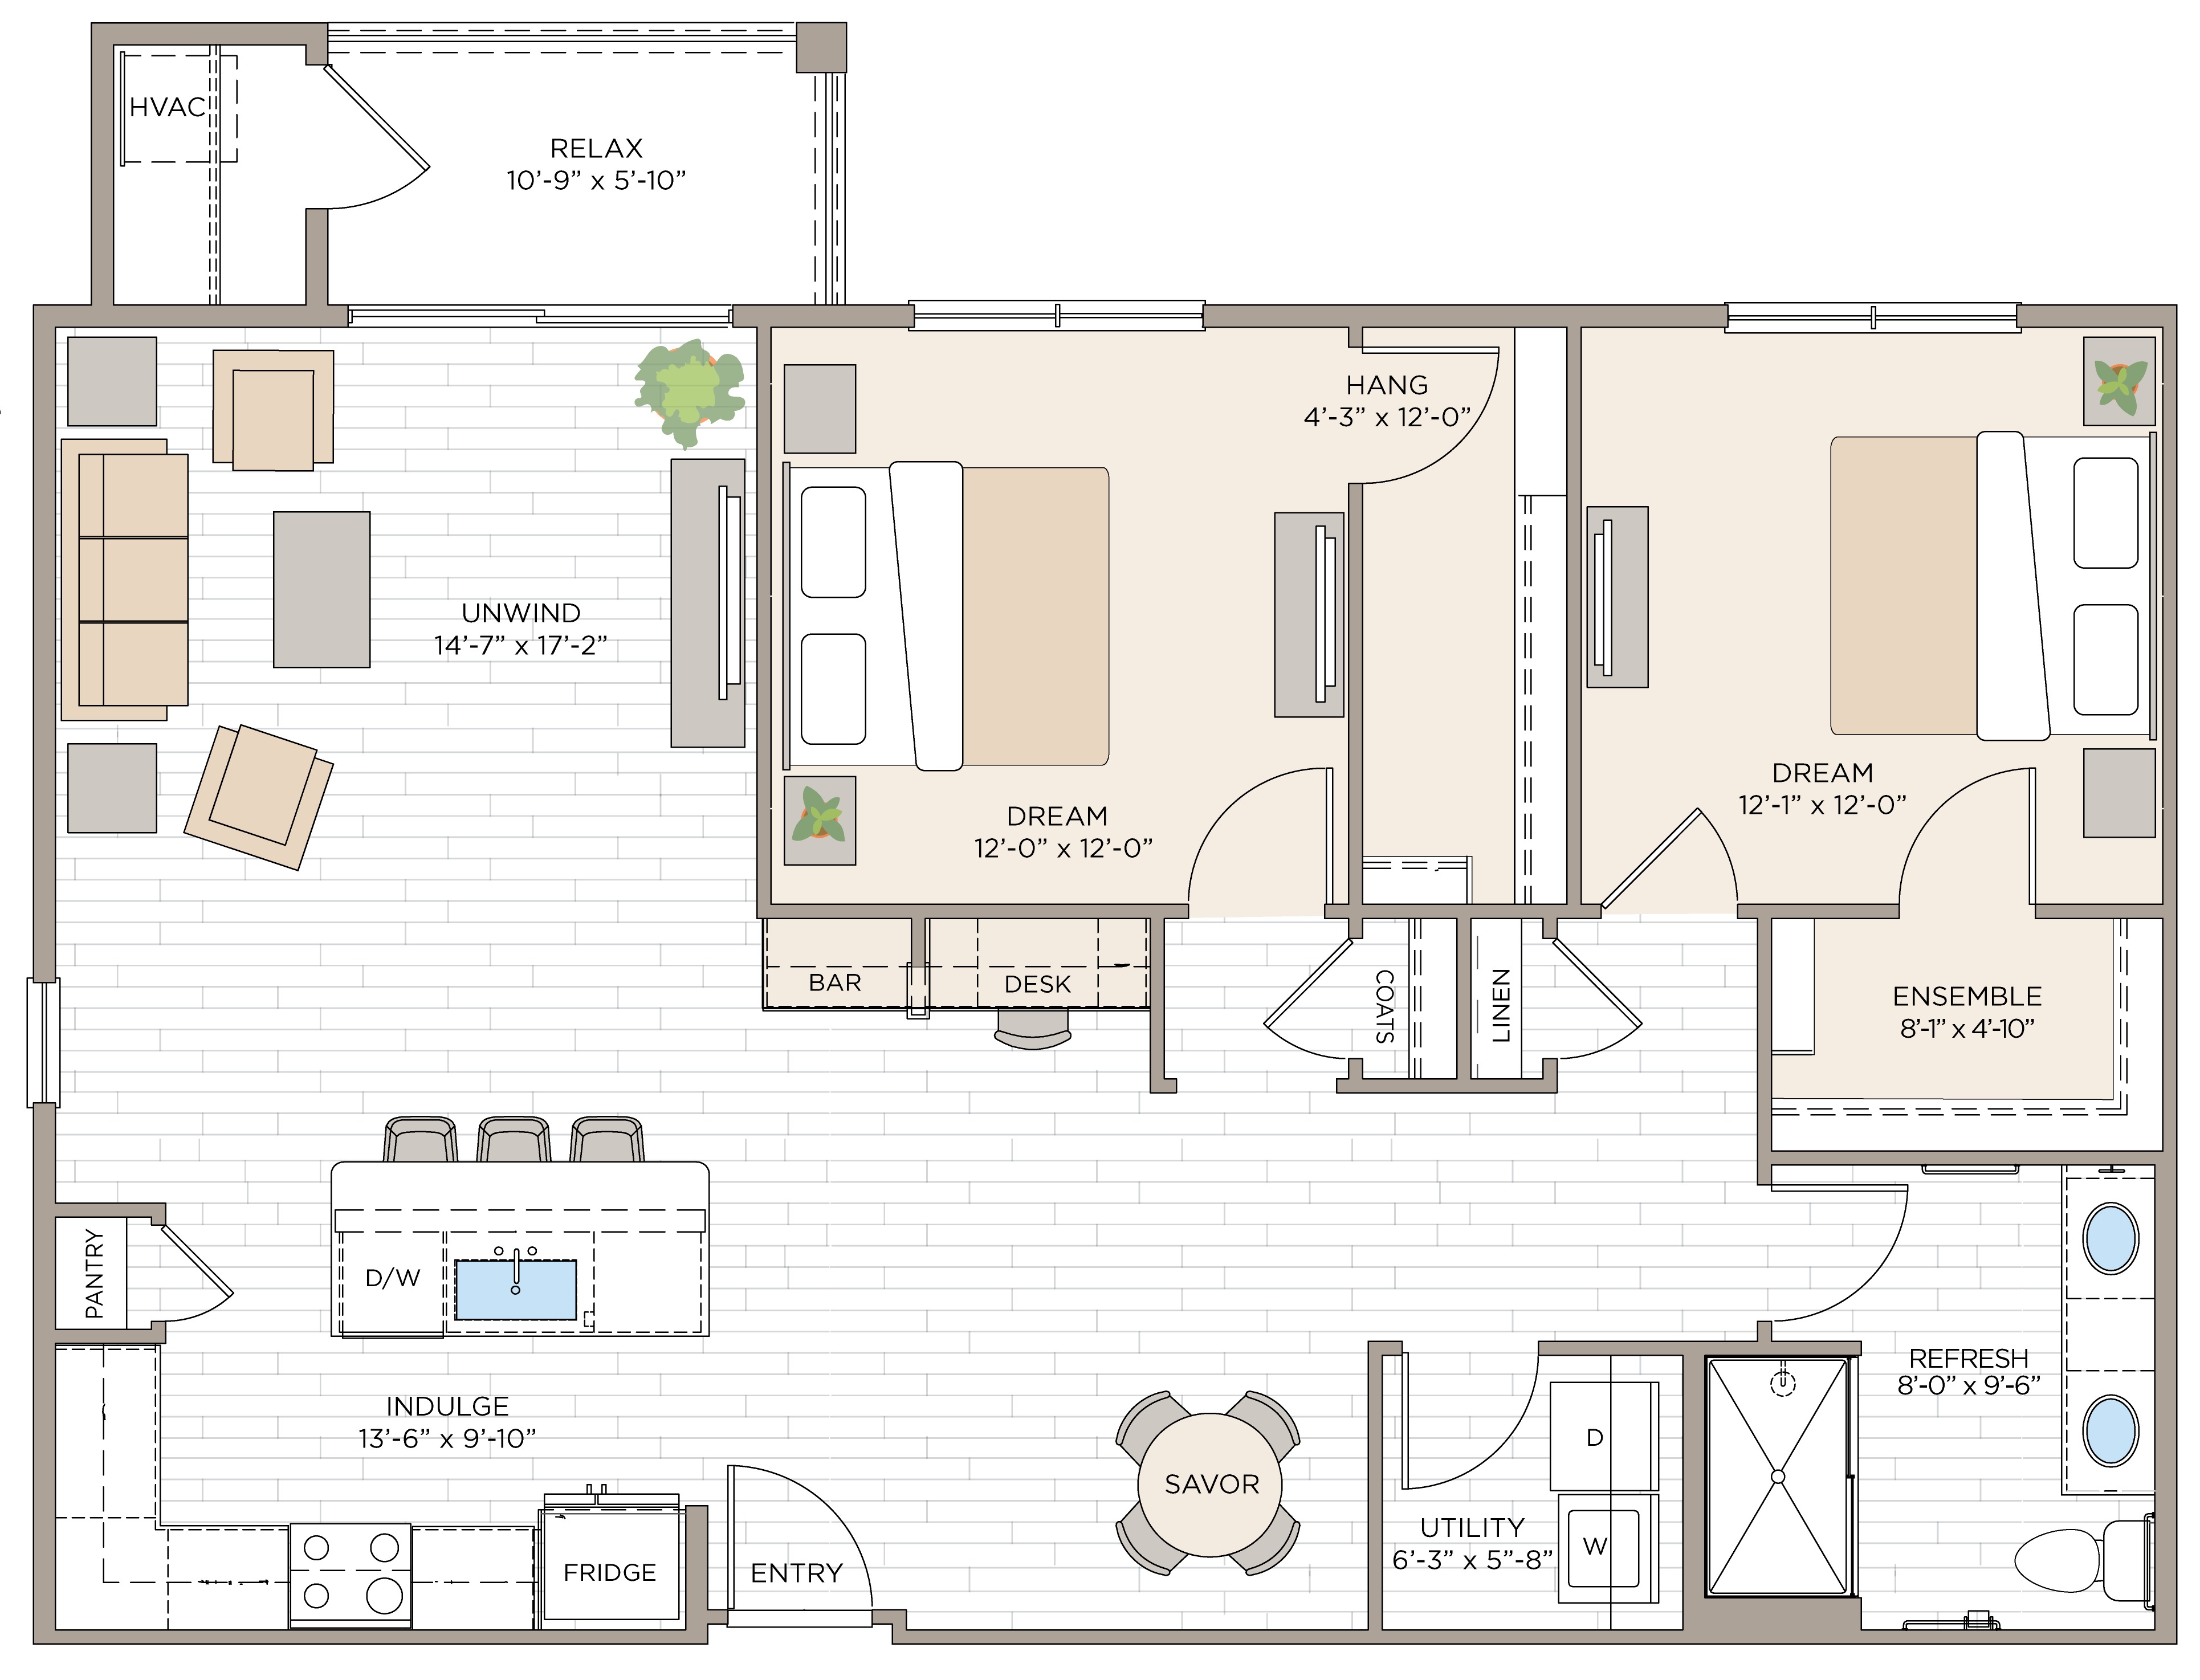 Floorplan for Unit #B1B, 2 bedroom unit at Halstead Maynard Crossing